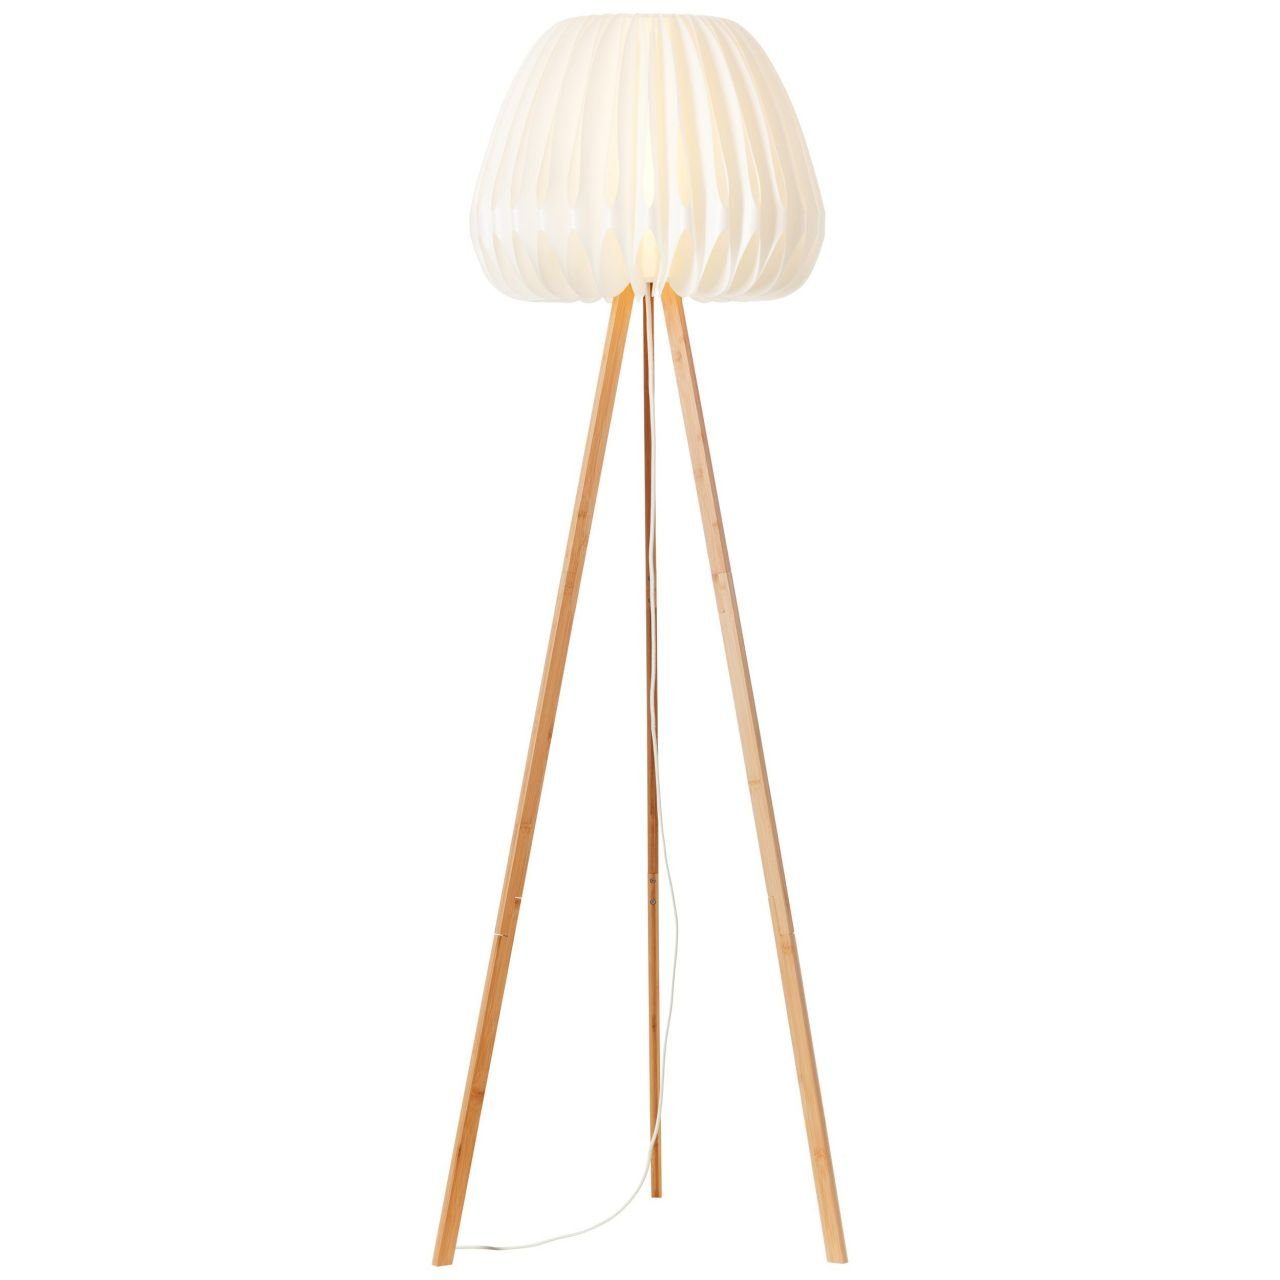 Stehlampe Bambus/Kunststoff dreibeinig Brilliant Inna, Lampe, hell/weiß, Inna holz Standleuchte,